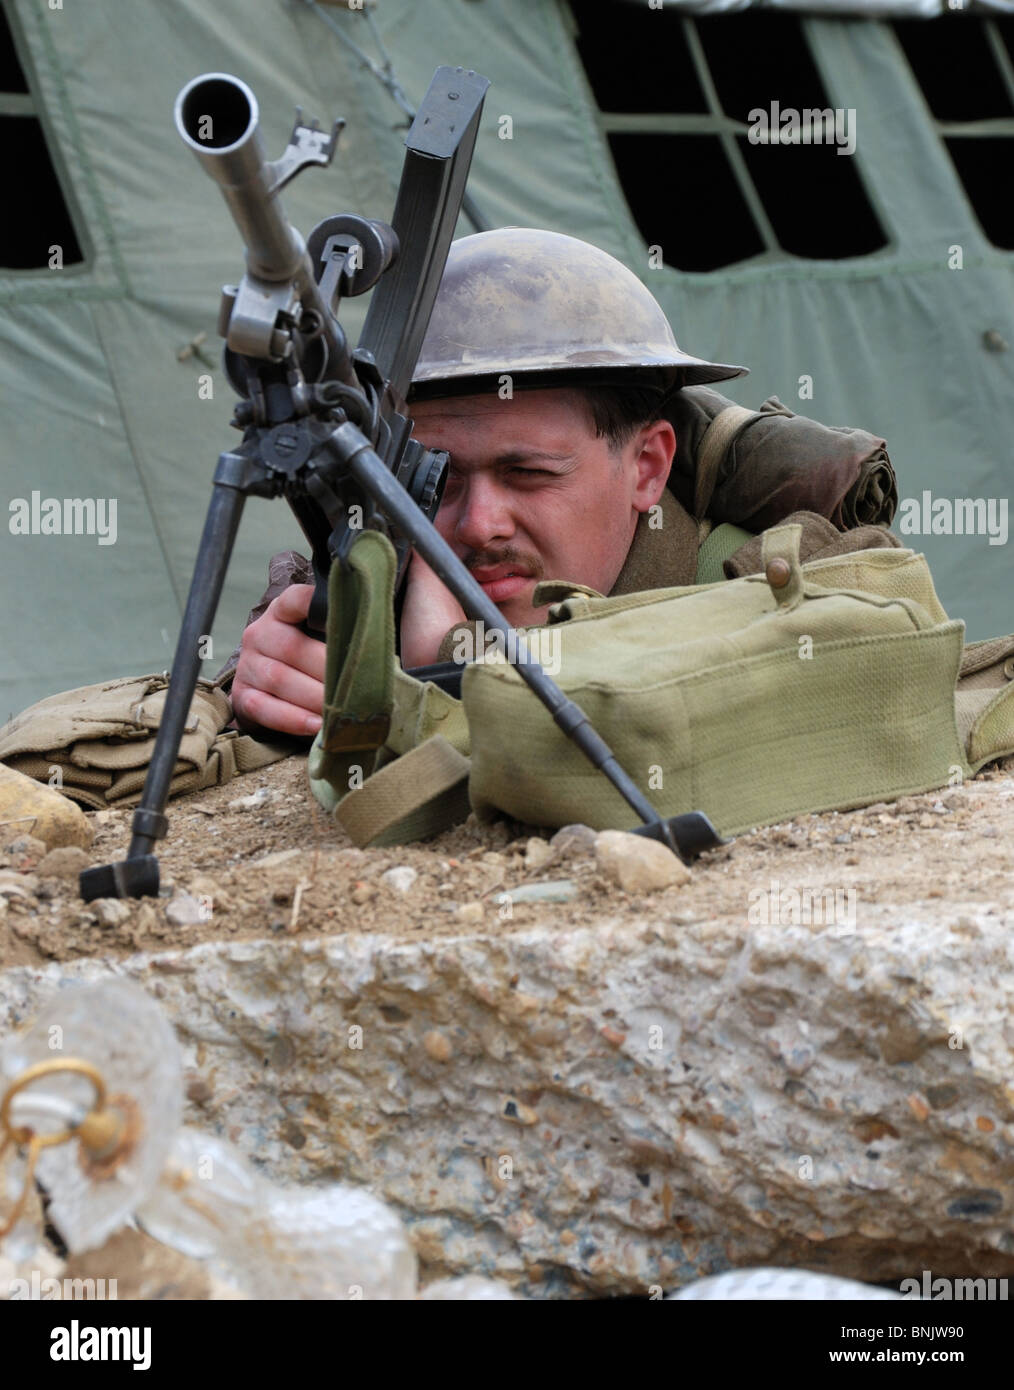 Un re-enactor nel ruolo di una seconda guerra mondiale soldato britannico per difendere una posizione con una bren mitragliatrice. Foto Stock